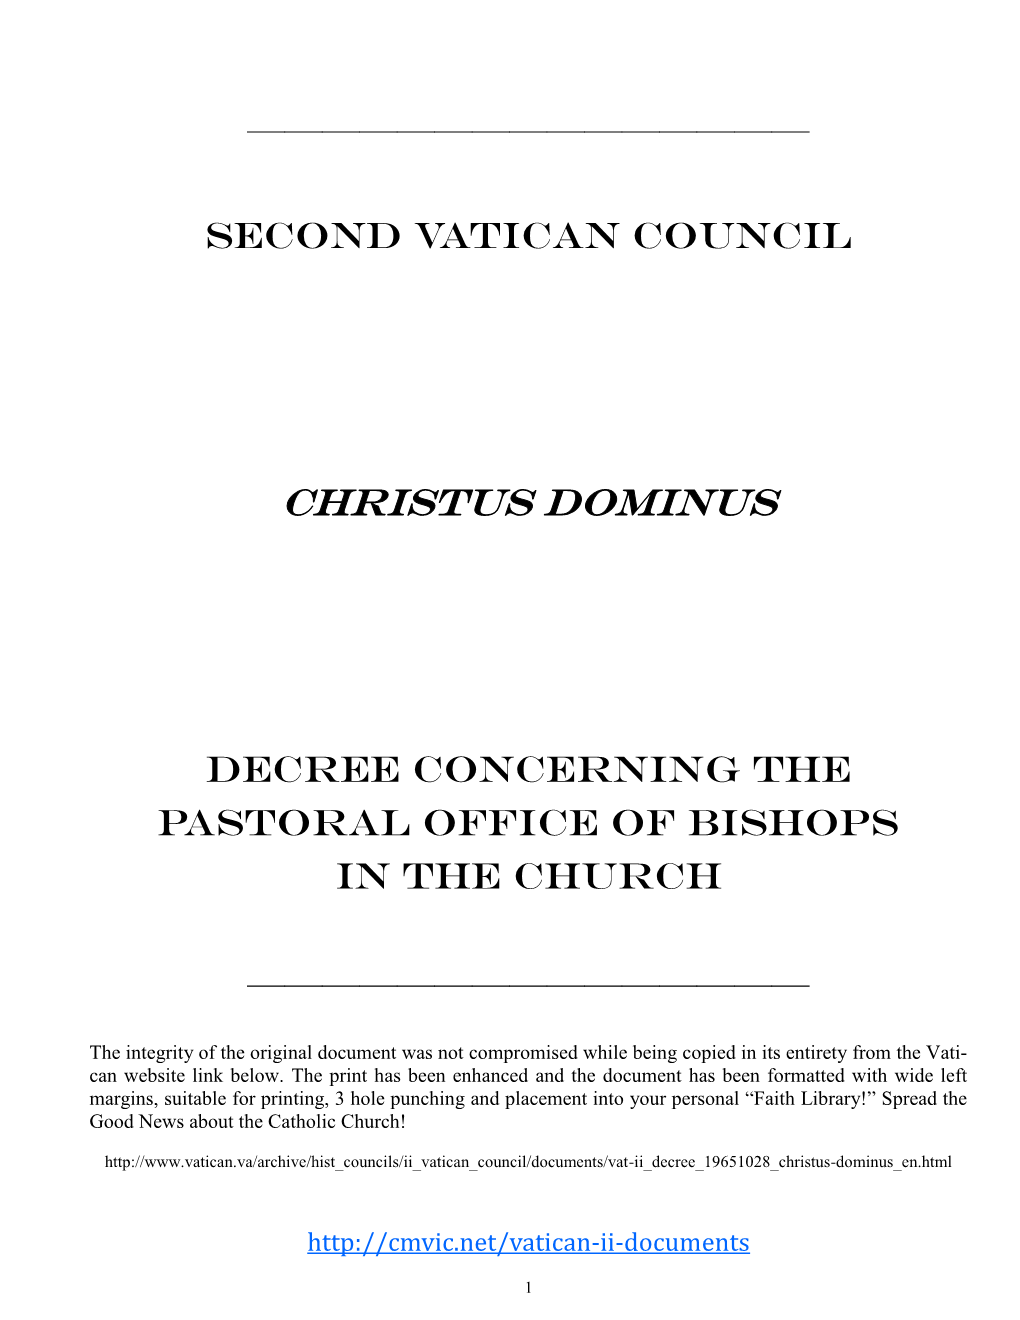 Christus Dominus